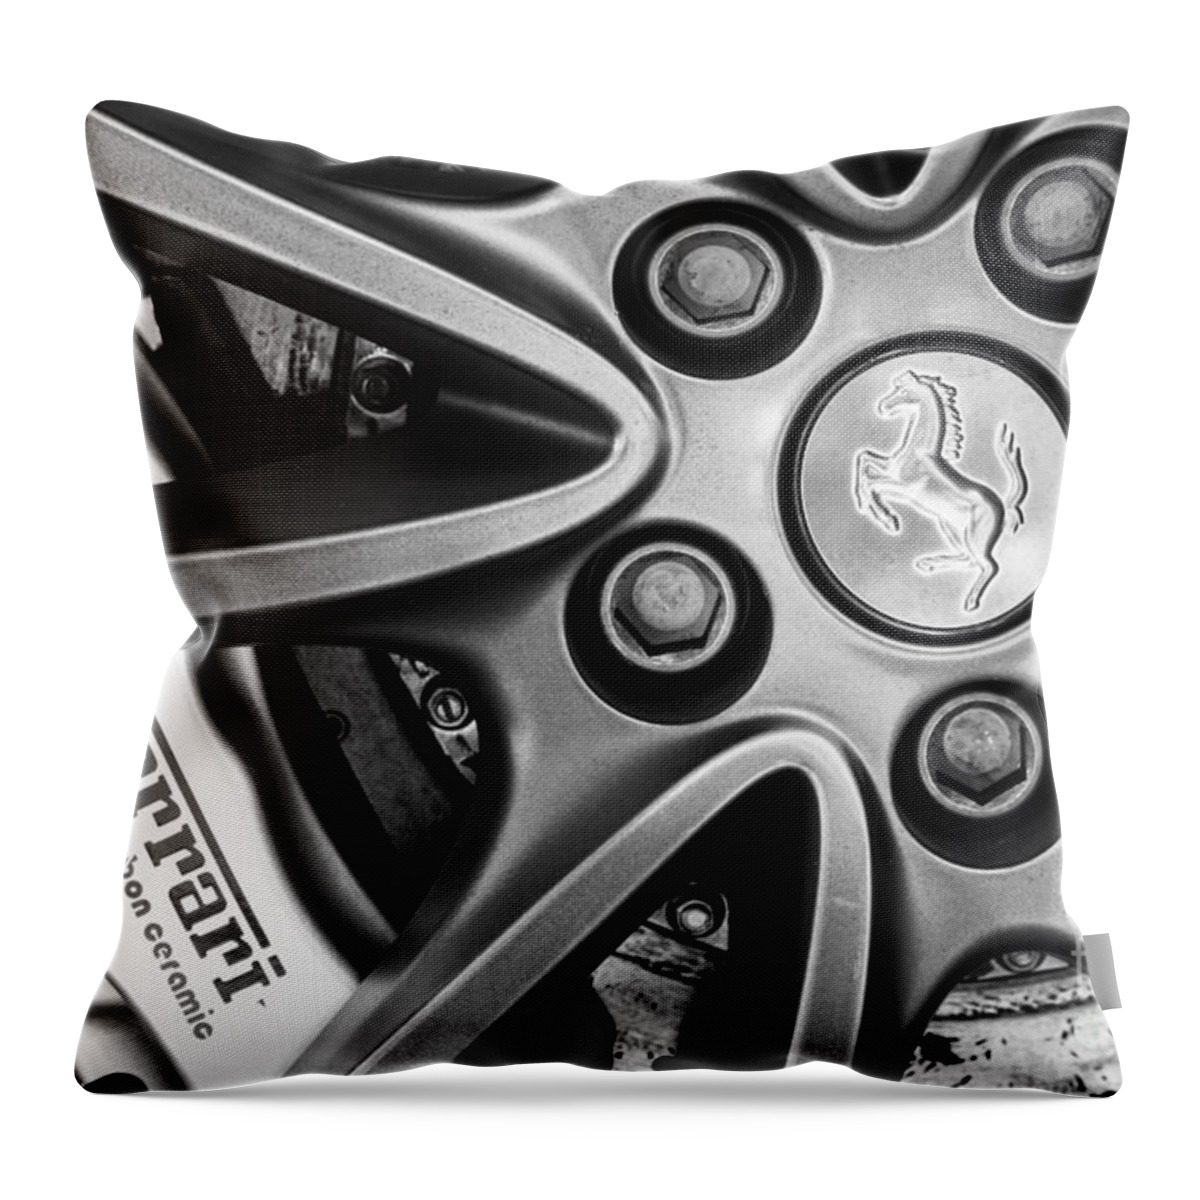 Ferrai F430 Scuderia 16m Throw Pillow featuring the photograph Scuderia 16M Wheel by Dennis Hedberg